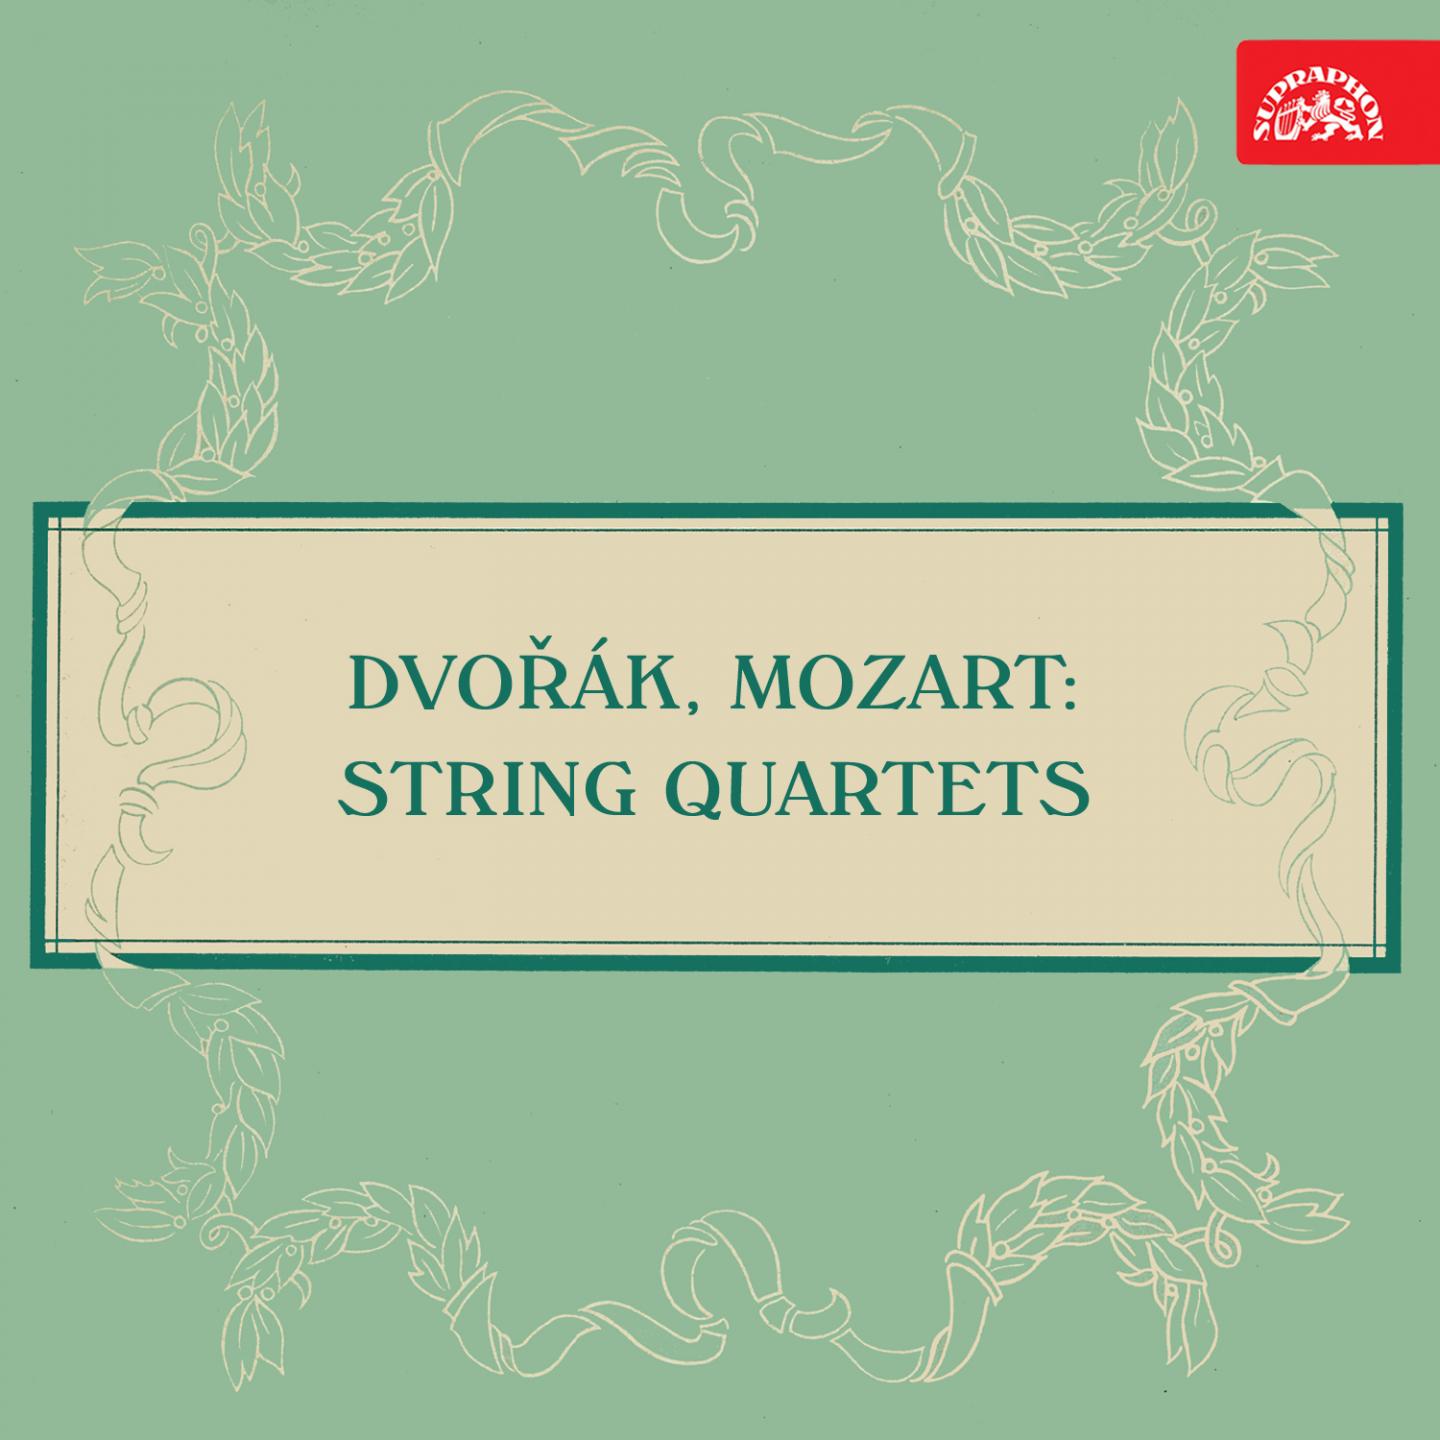 Dvoa k and Mozart: String Quartets